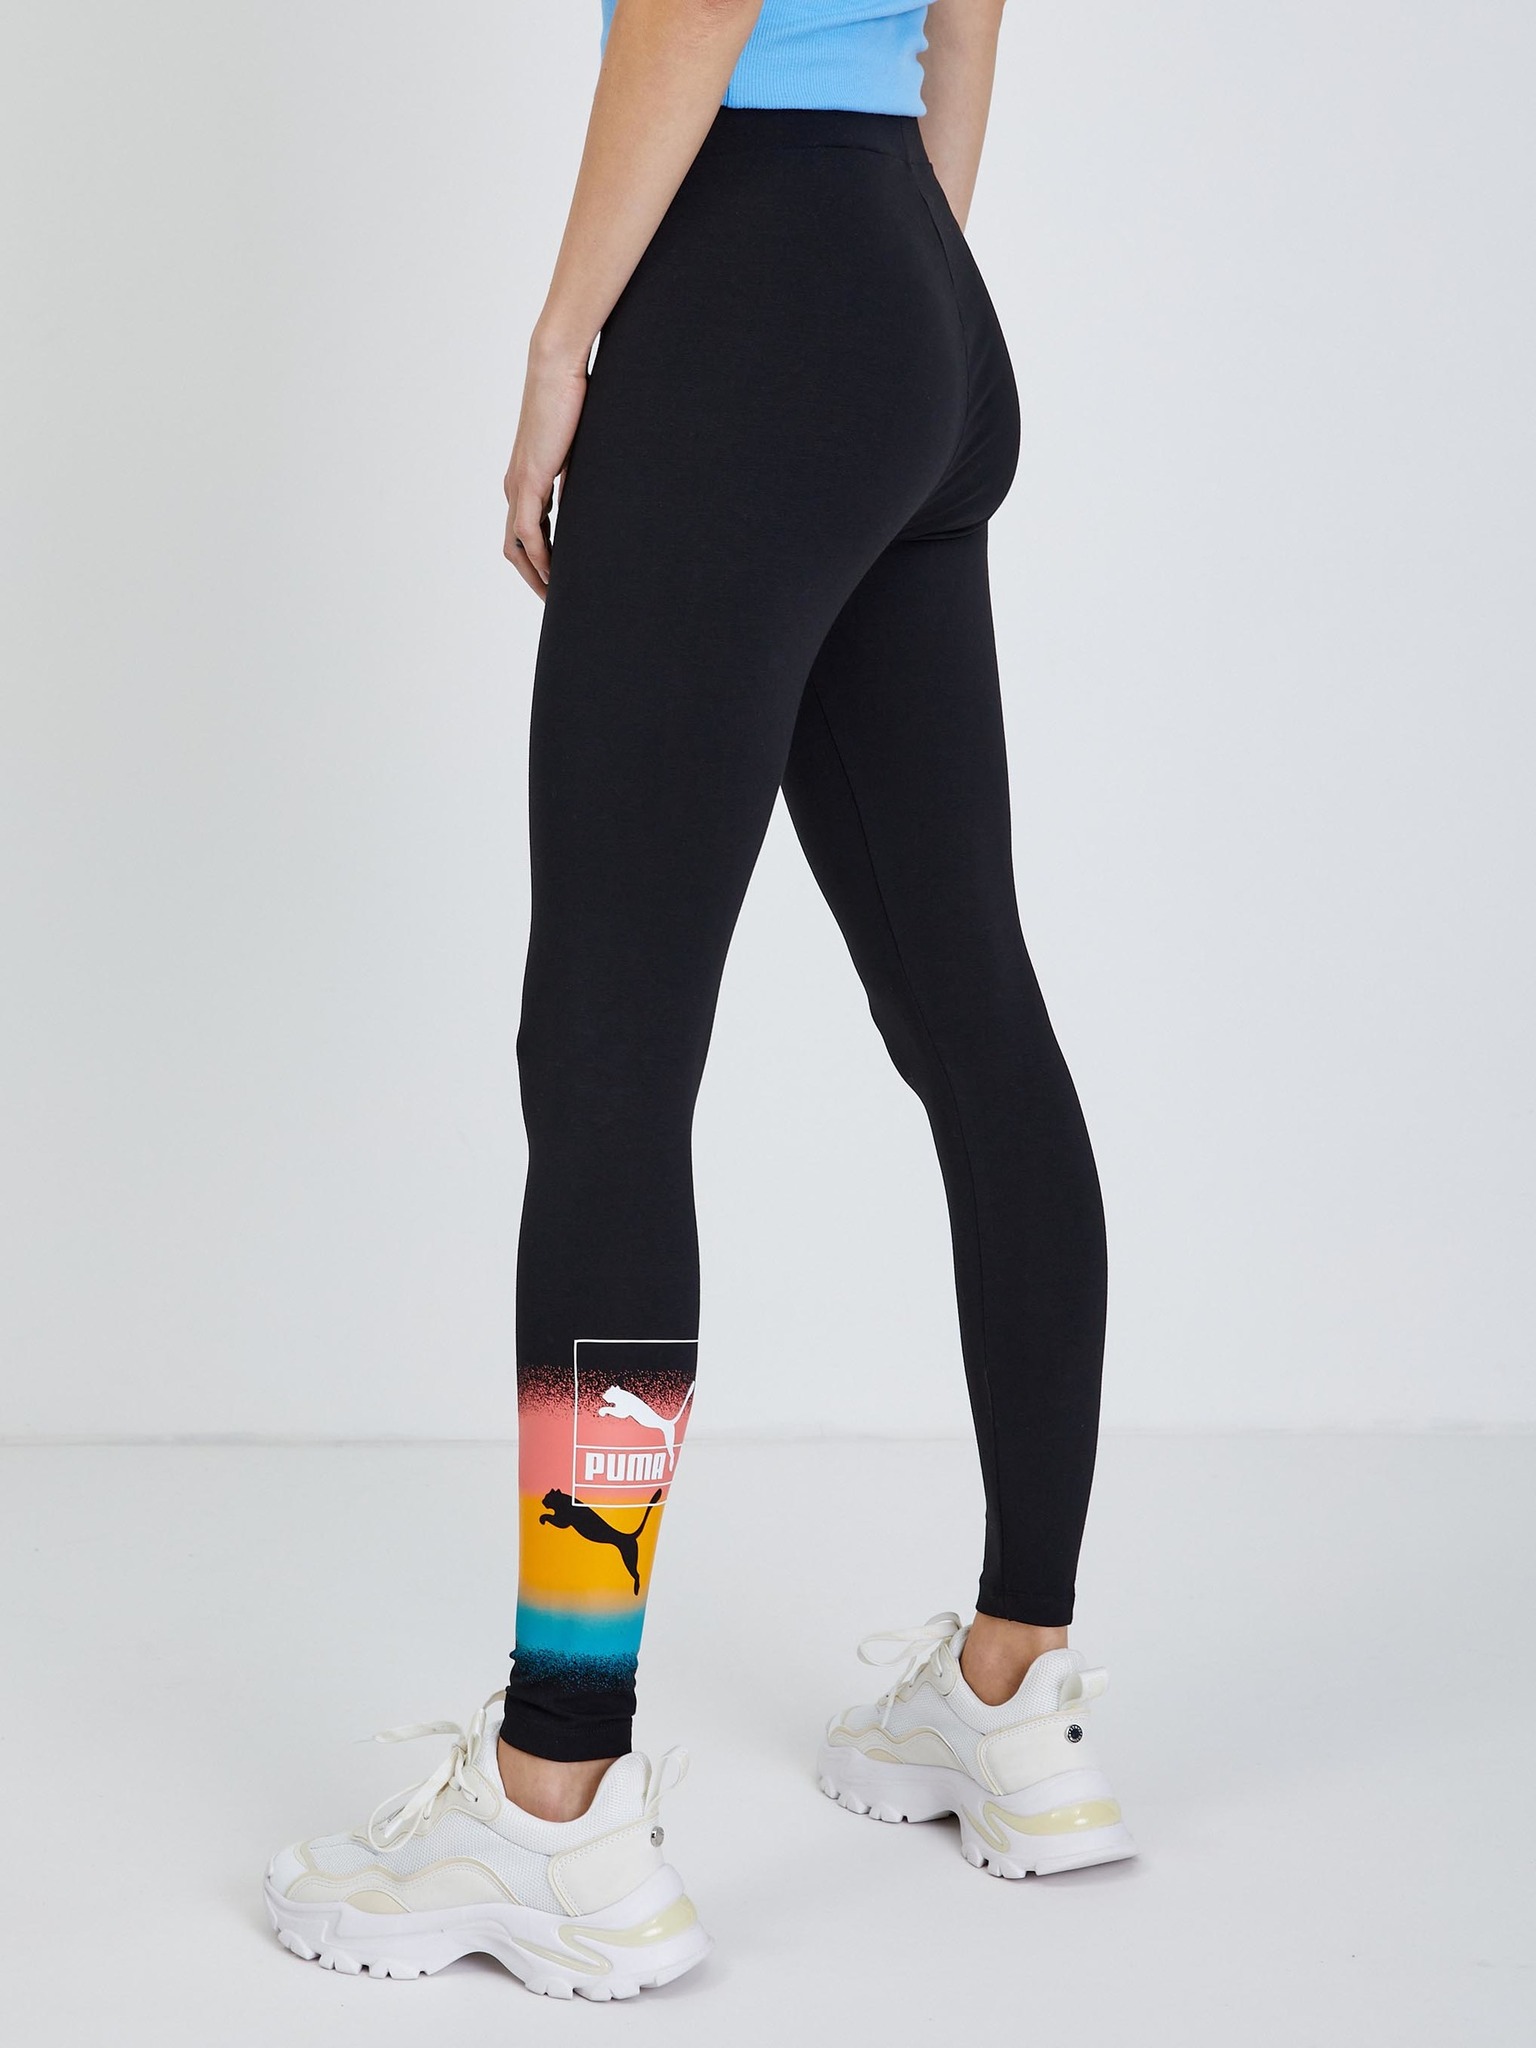 Buy PUMA Women's Brand Love Leggings, Black, Large at